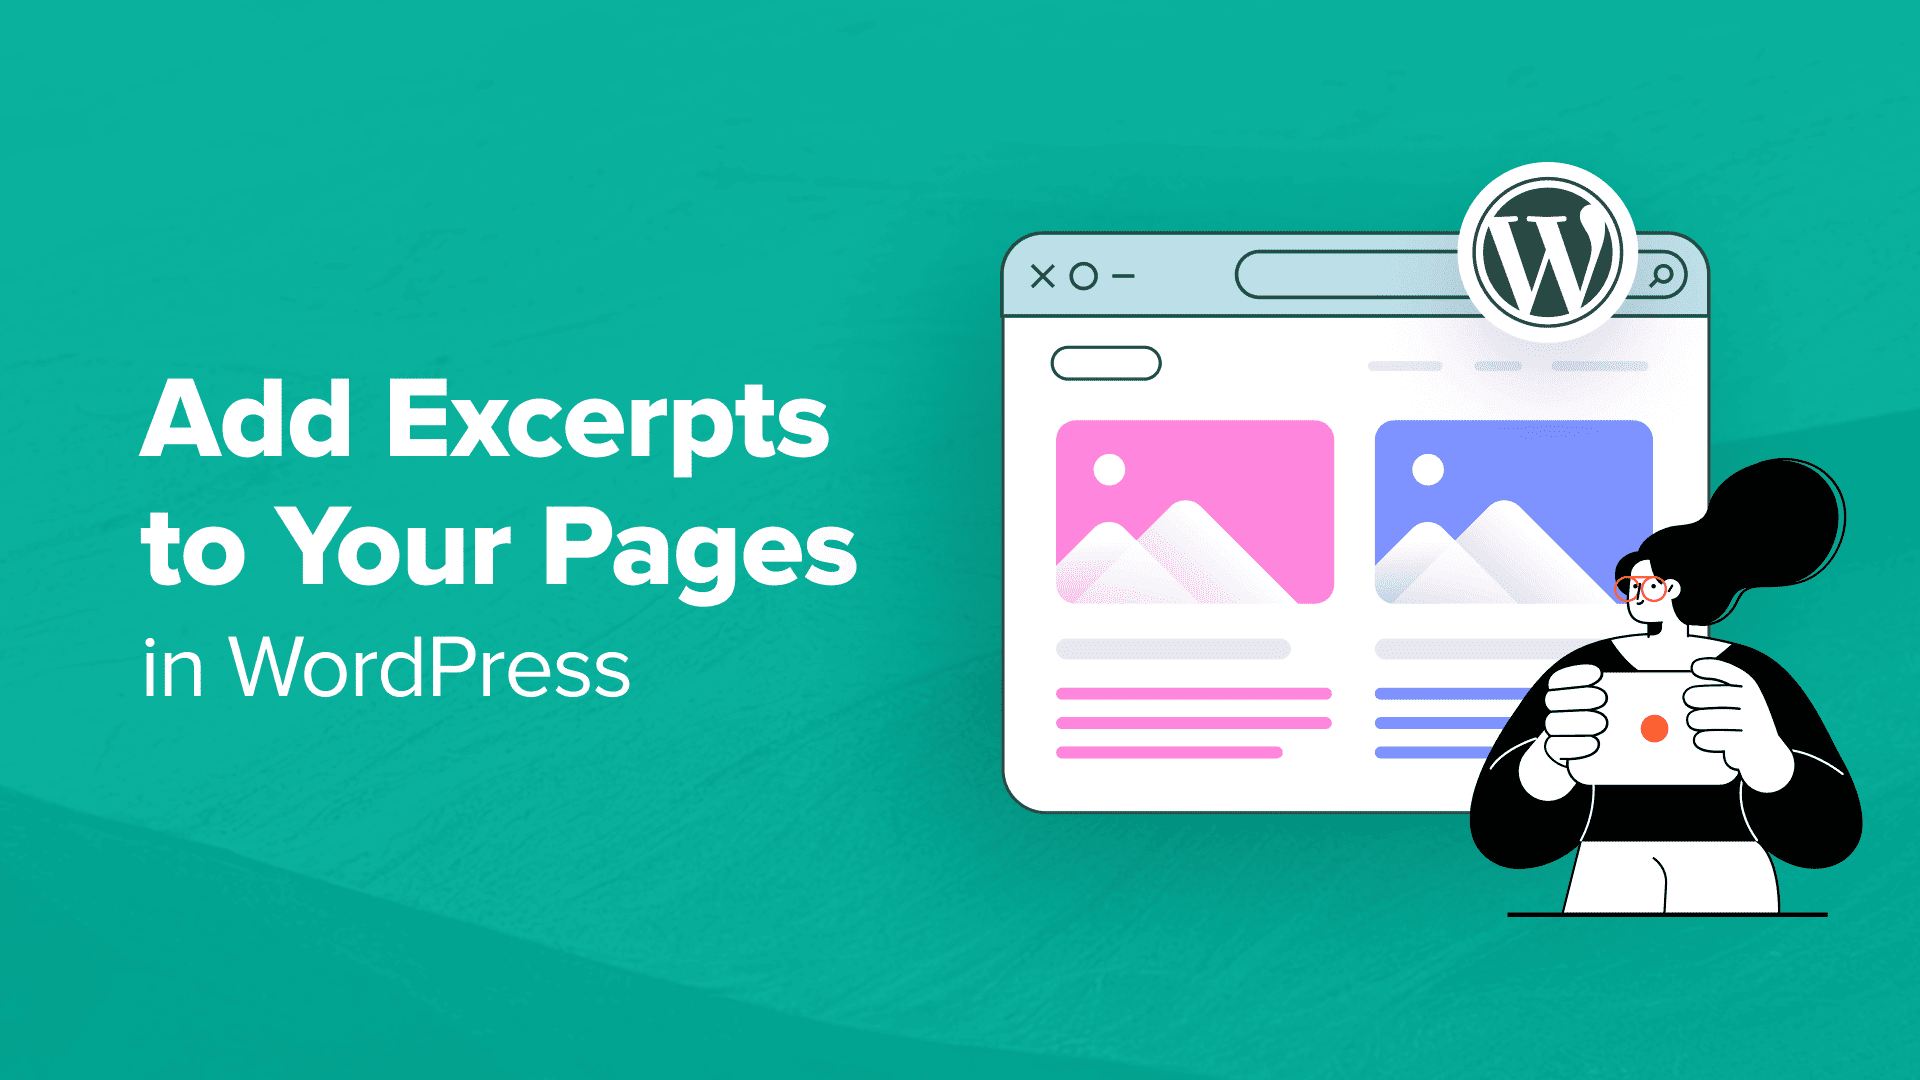 Come aggiungere estratti alle tue pagine in WordPress (procedura dettagliata